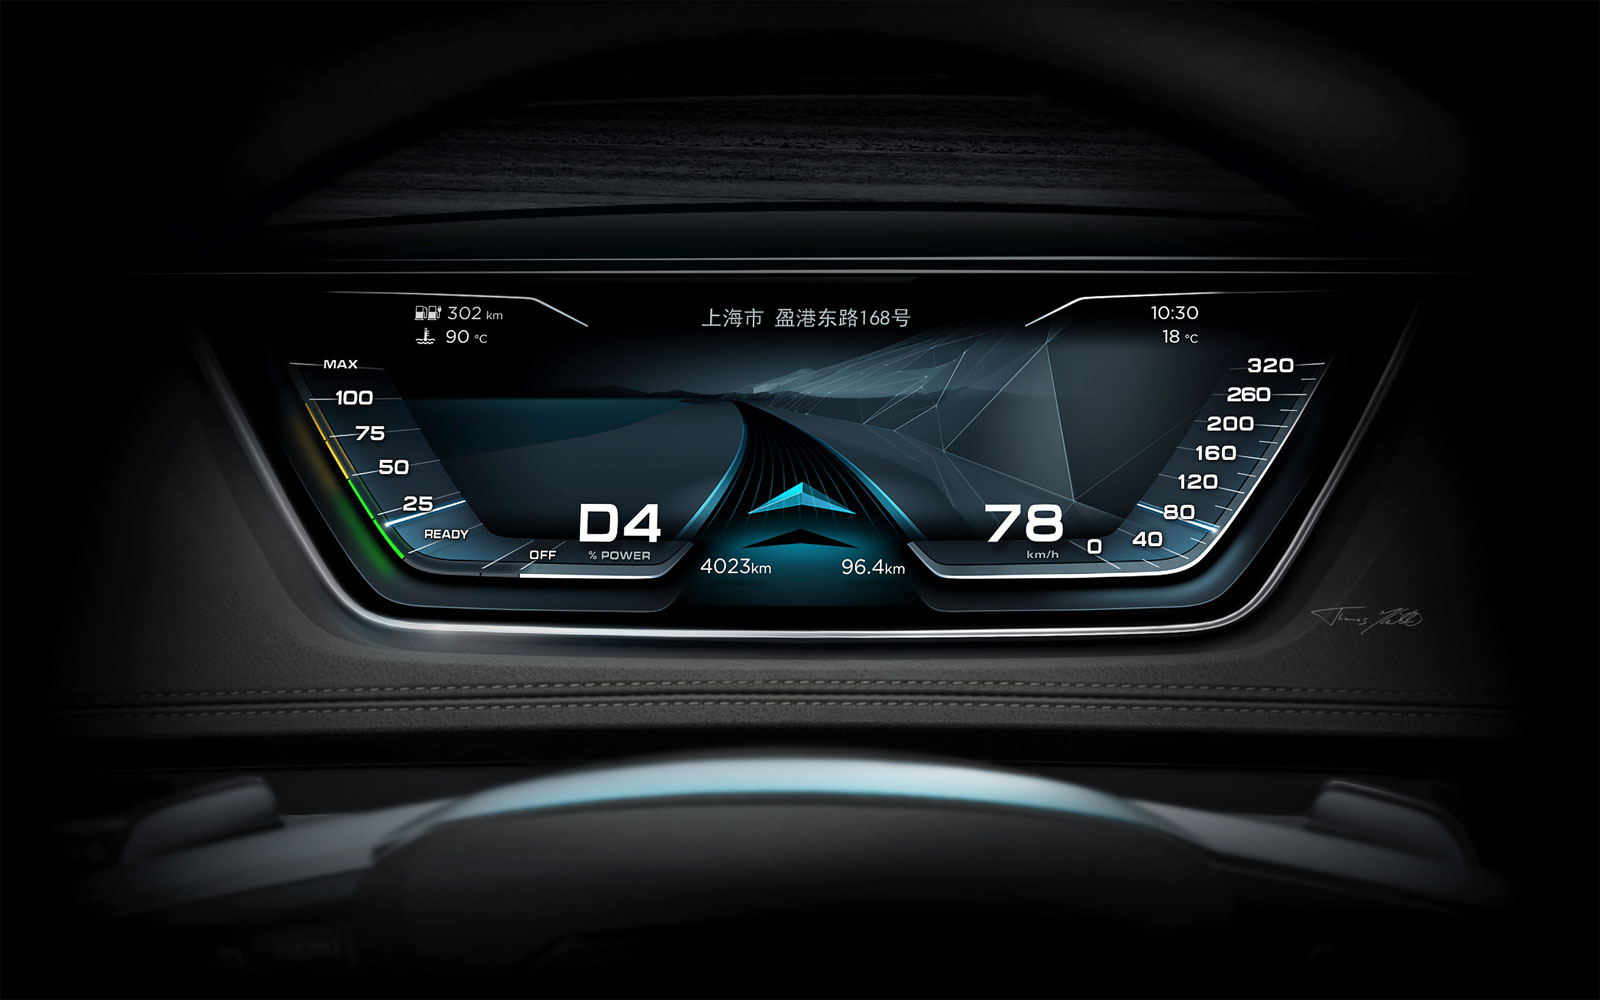 Audi Prologue Allroad Concept, 2015 - Interior Render